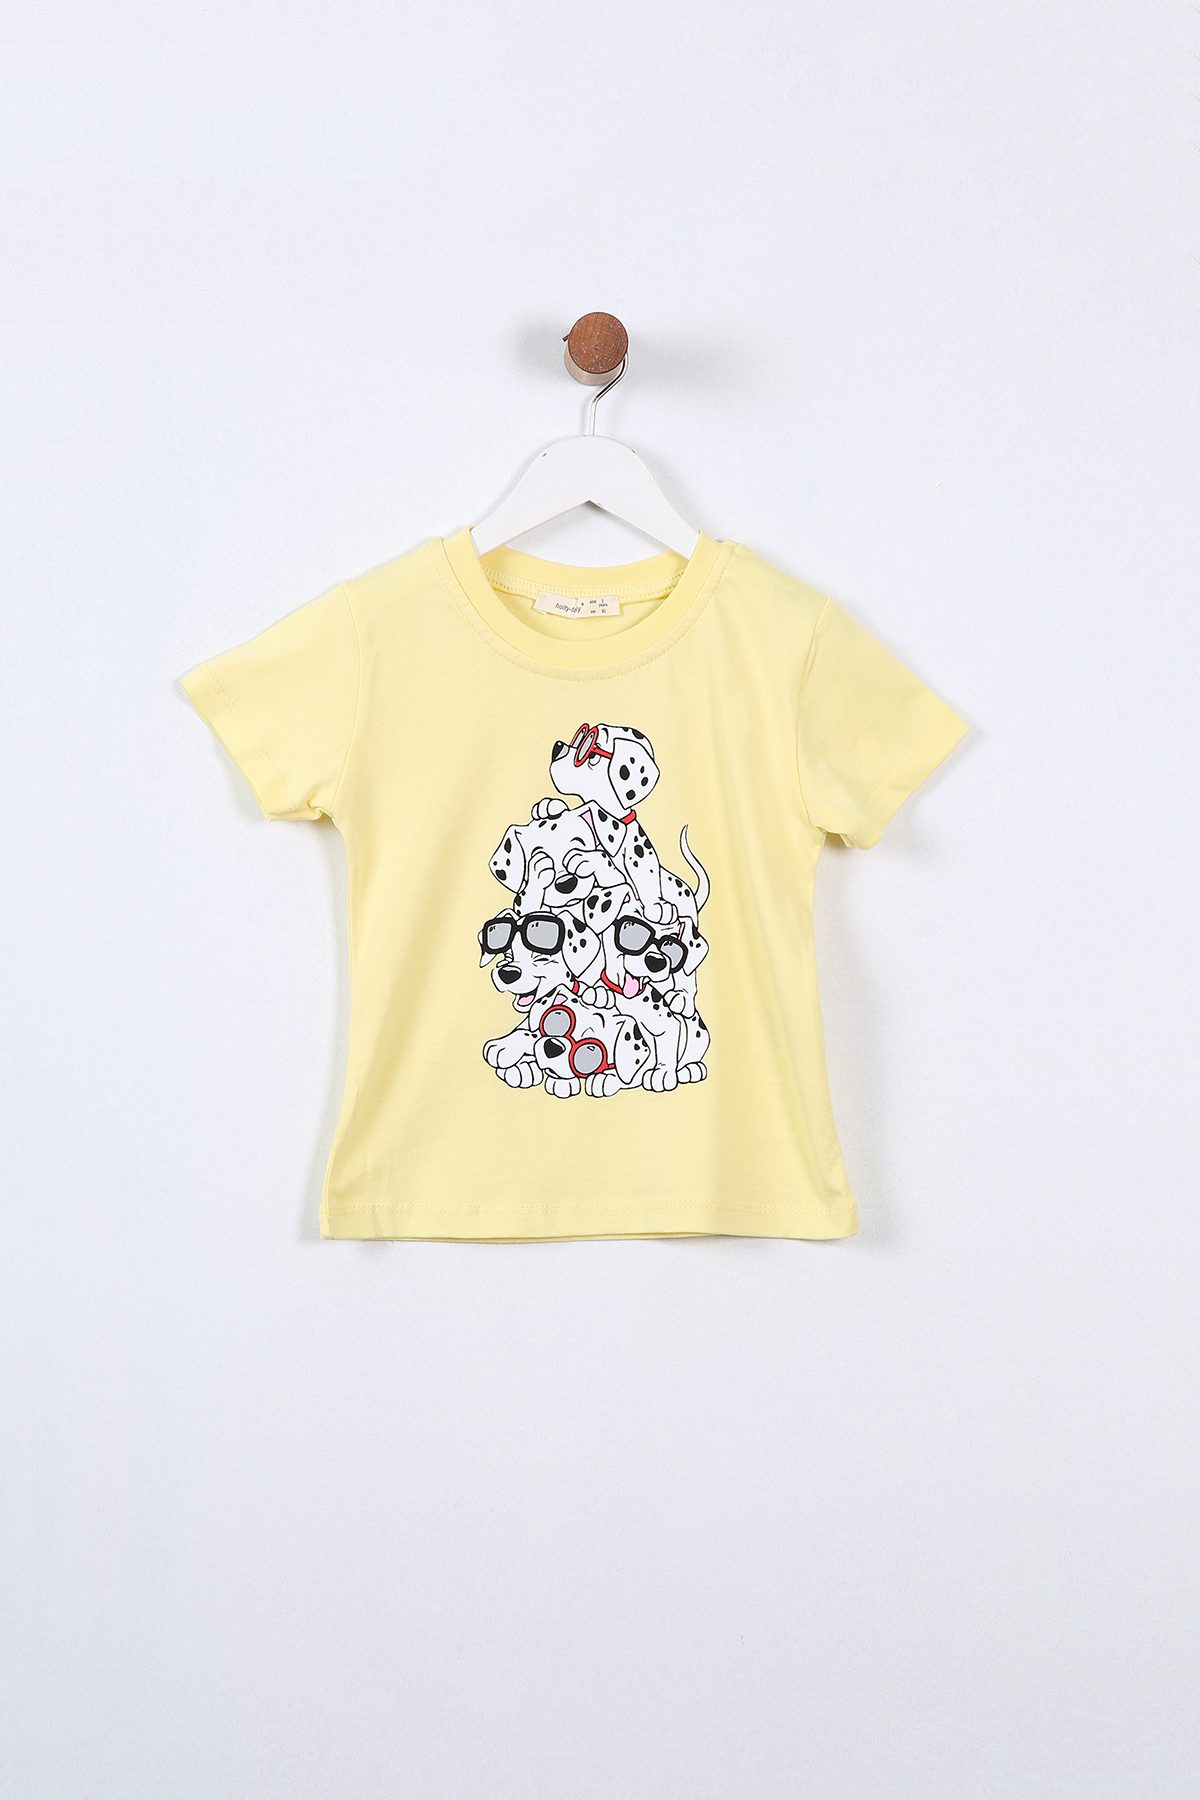 Boy Dog Siblings Printed T-Shirt / 2Y | 3Y | 4Y | 5Y | 6Y - Kids Fashion Turkey